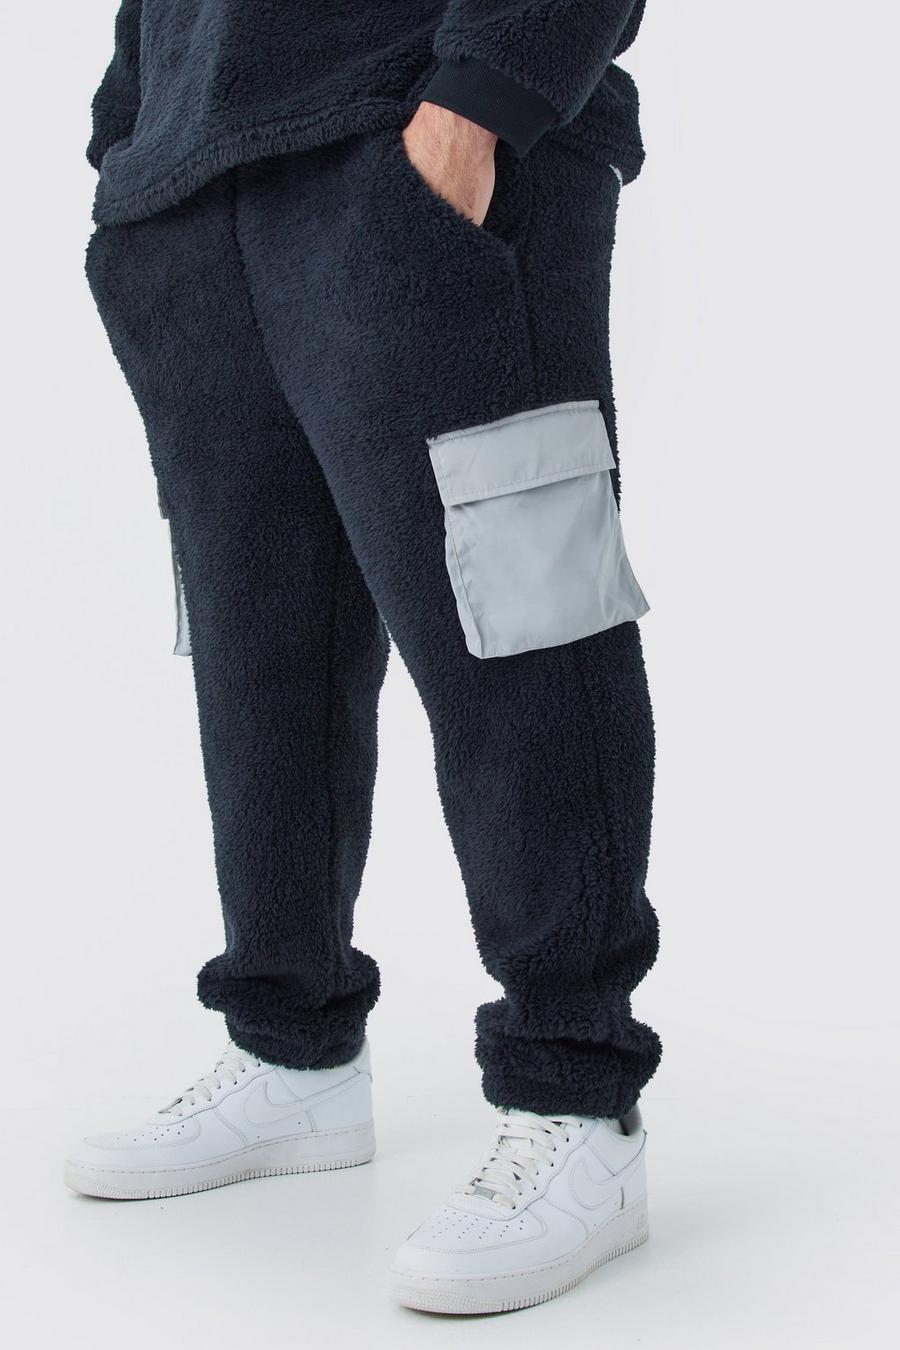 Pantaloni tuta Plus Size in pile borg con tasche Cargo in nylon, Black